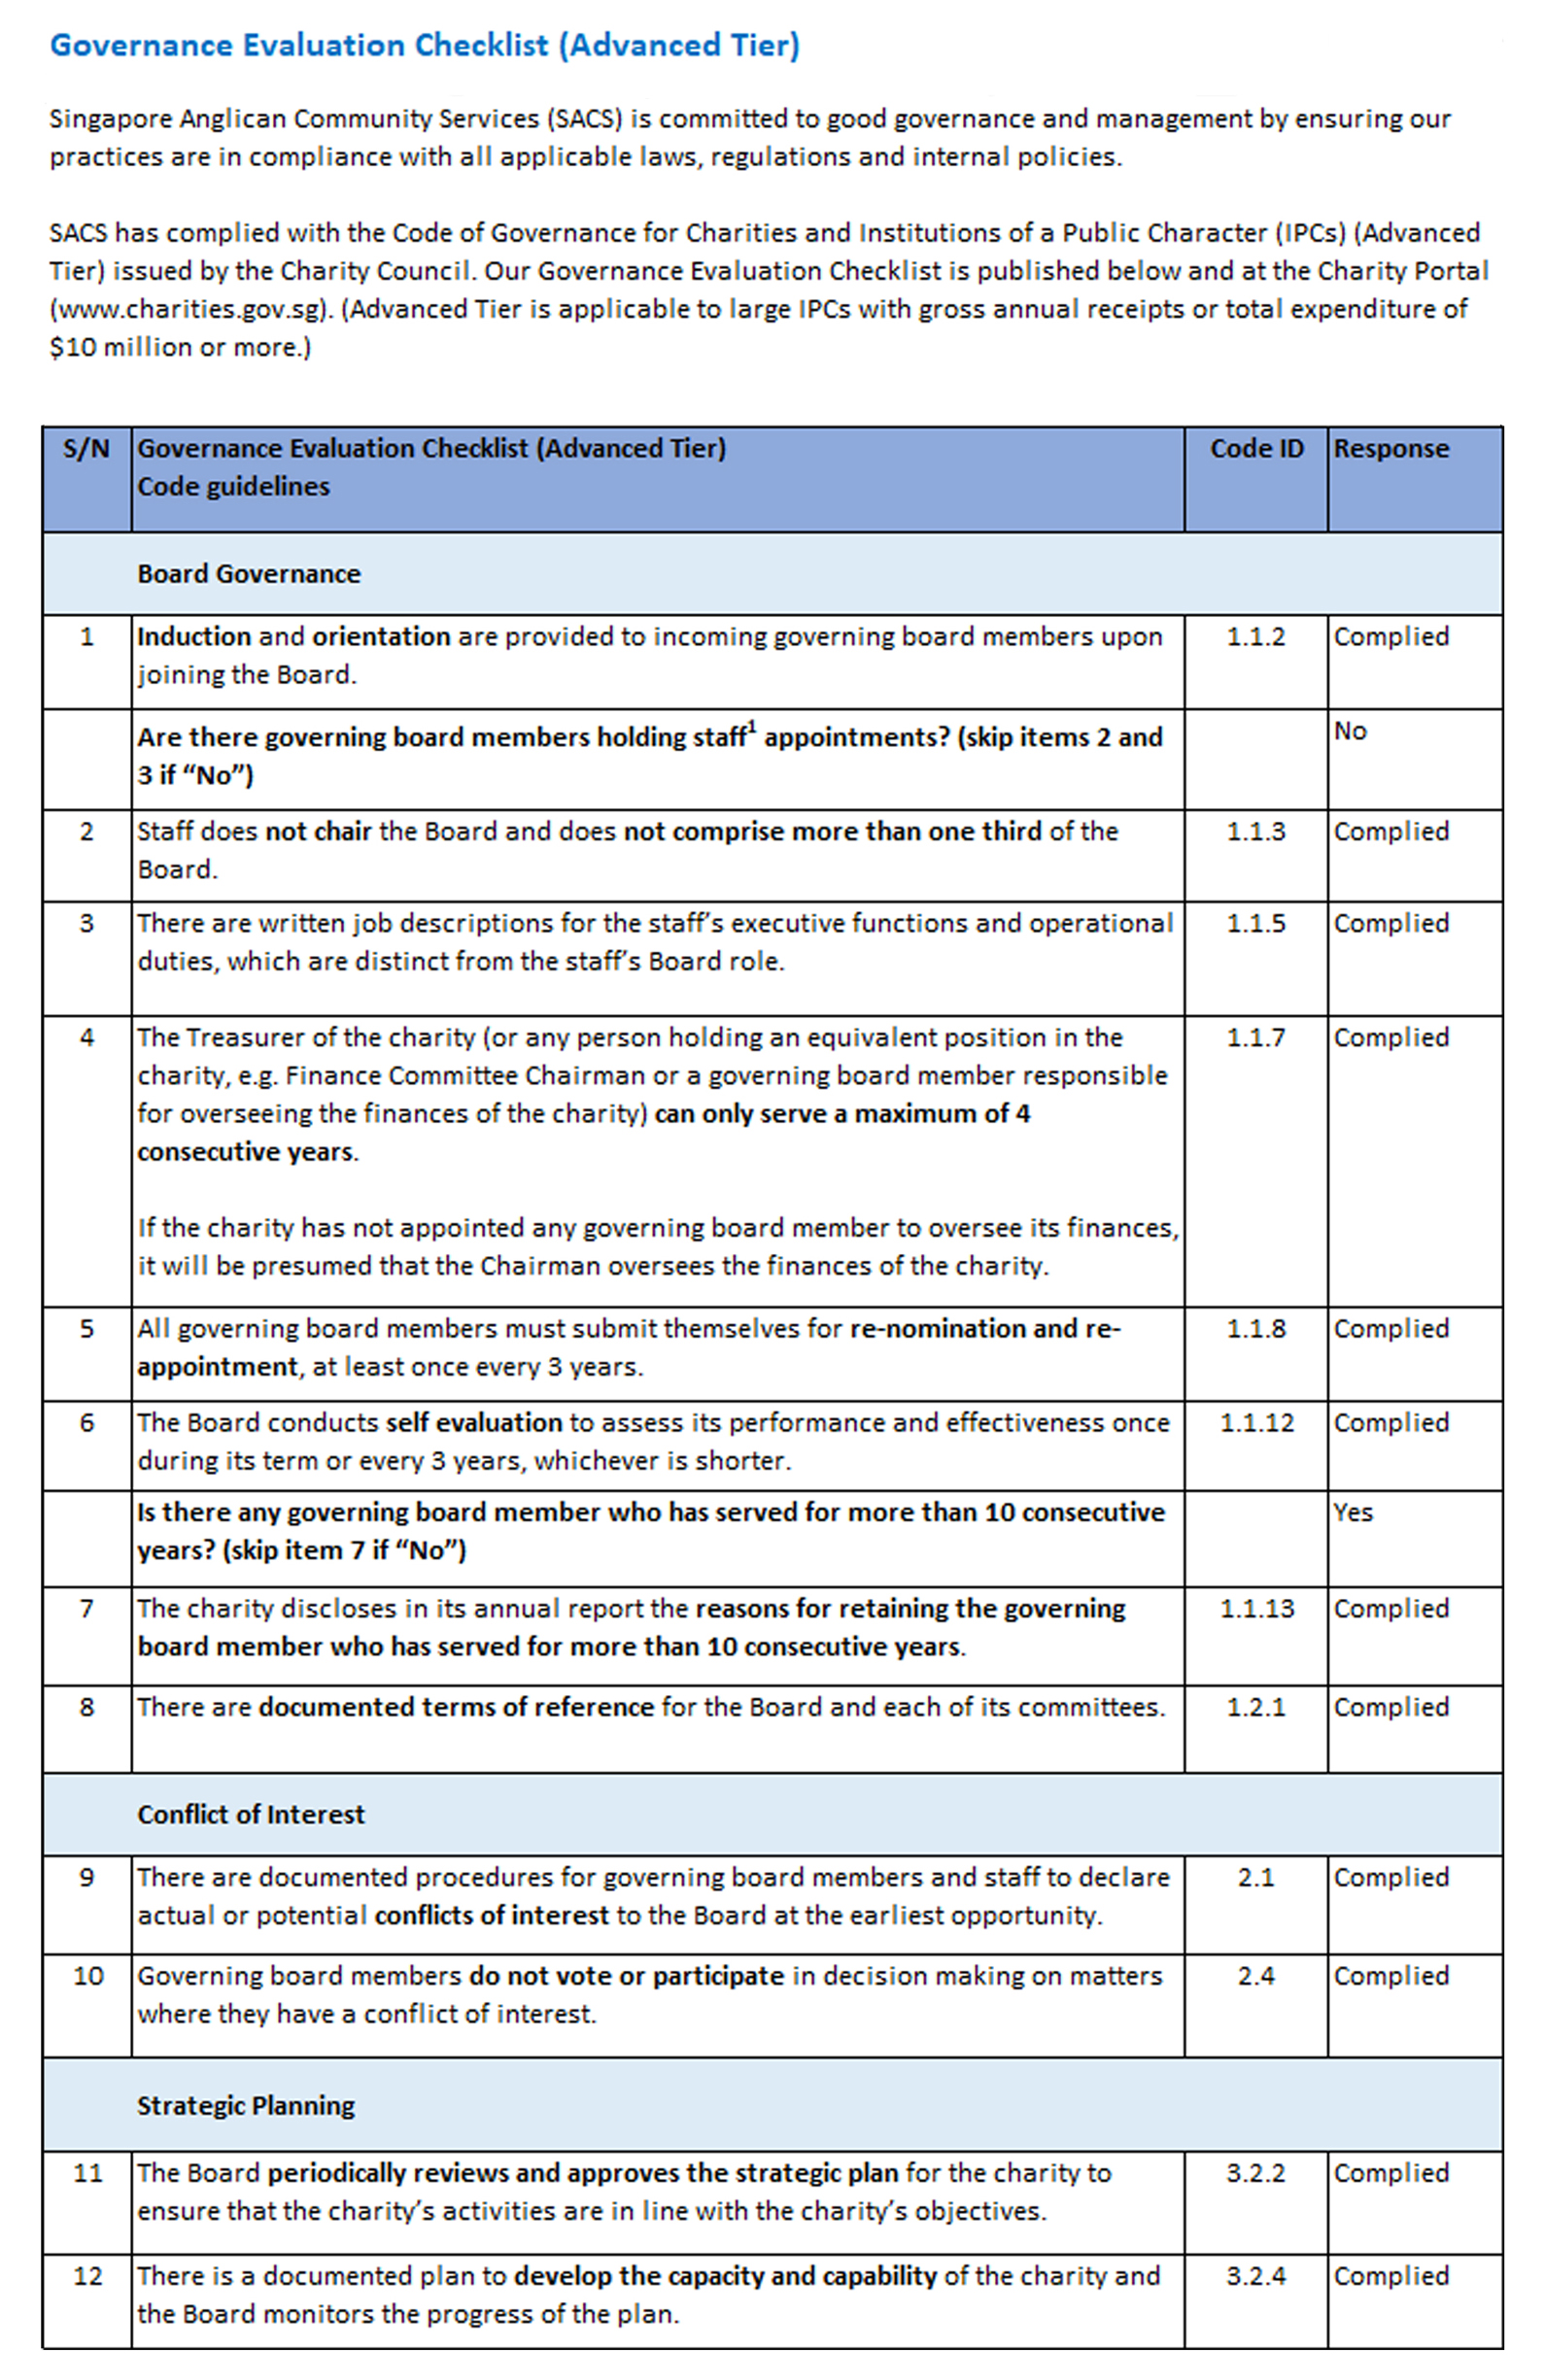 gec1-2-sacs Governance Evaluation Checklist